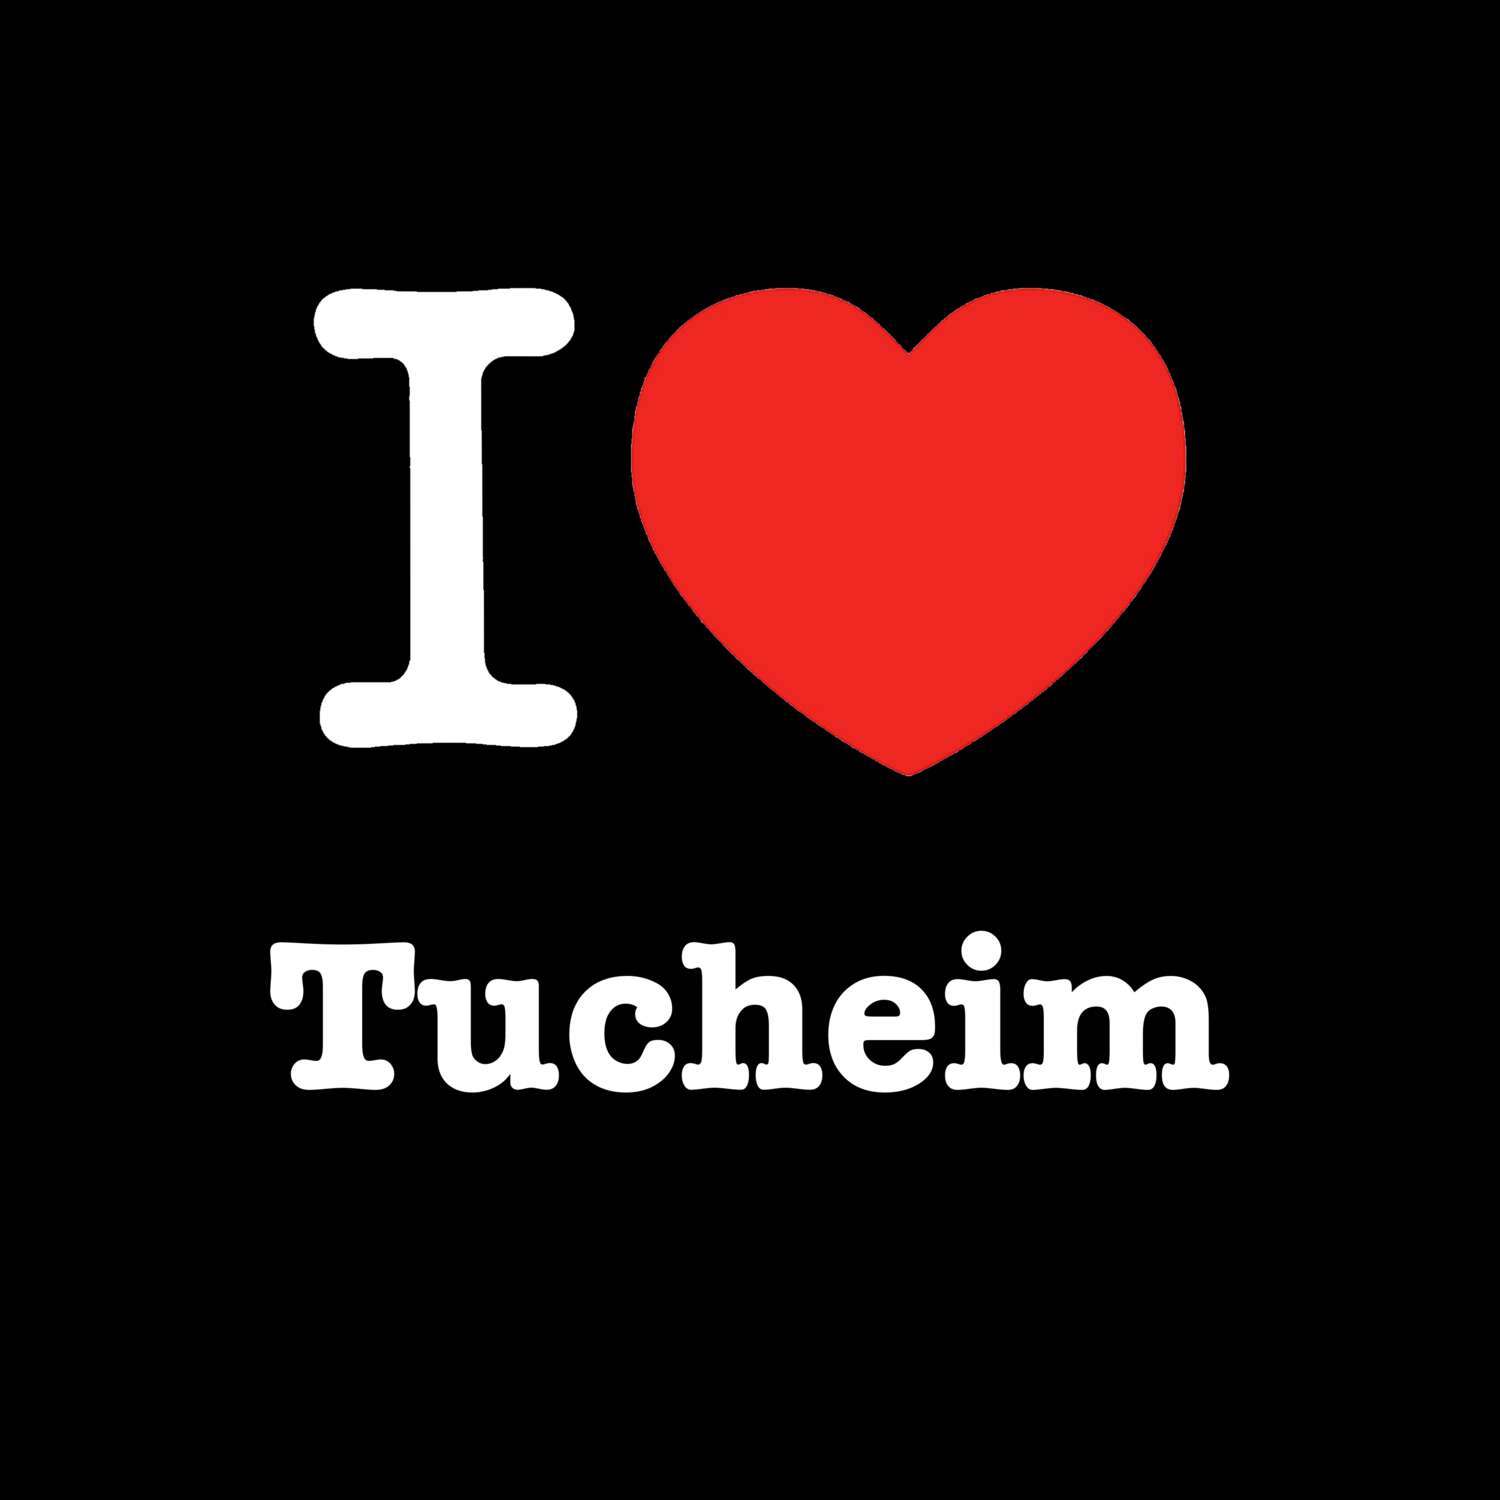 Tucheim T-Shirt »I love«